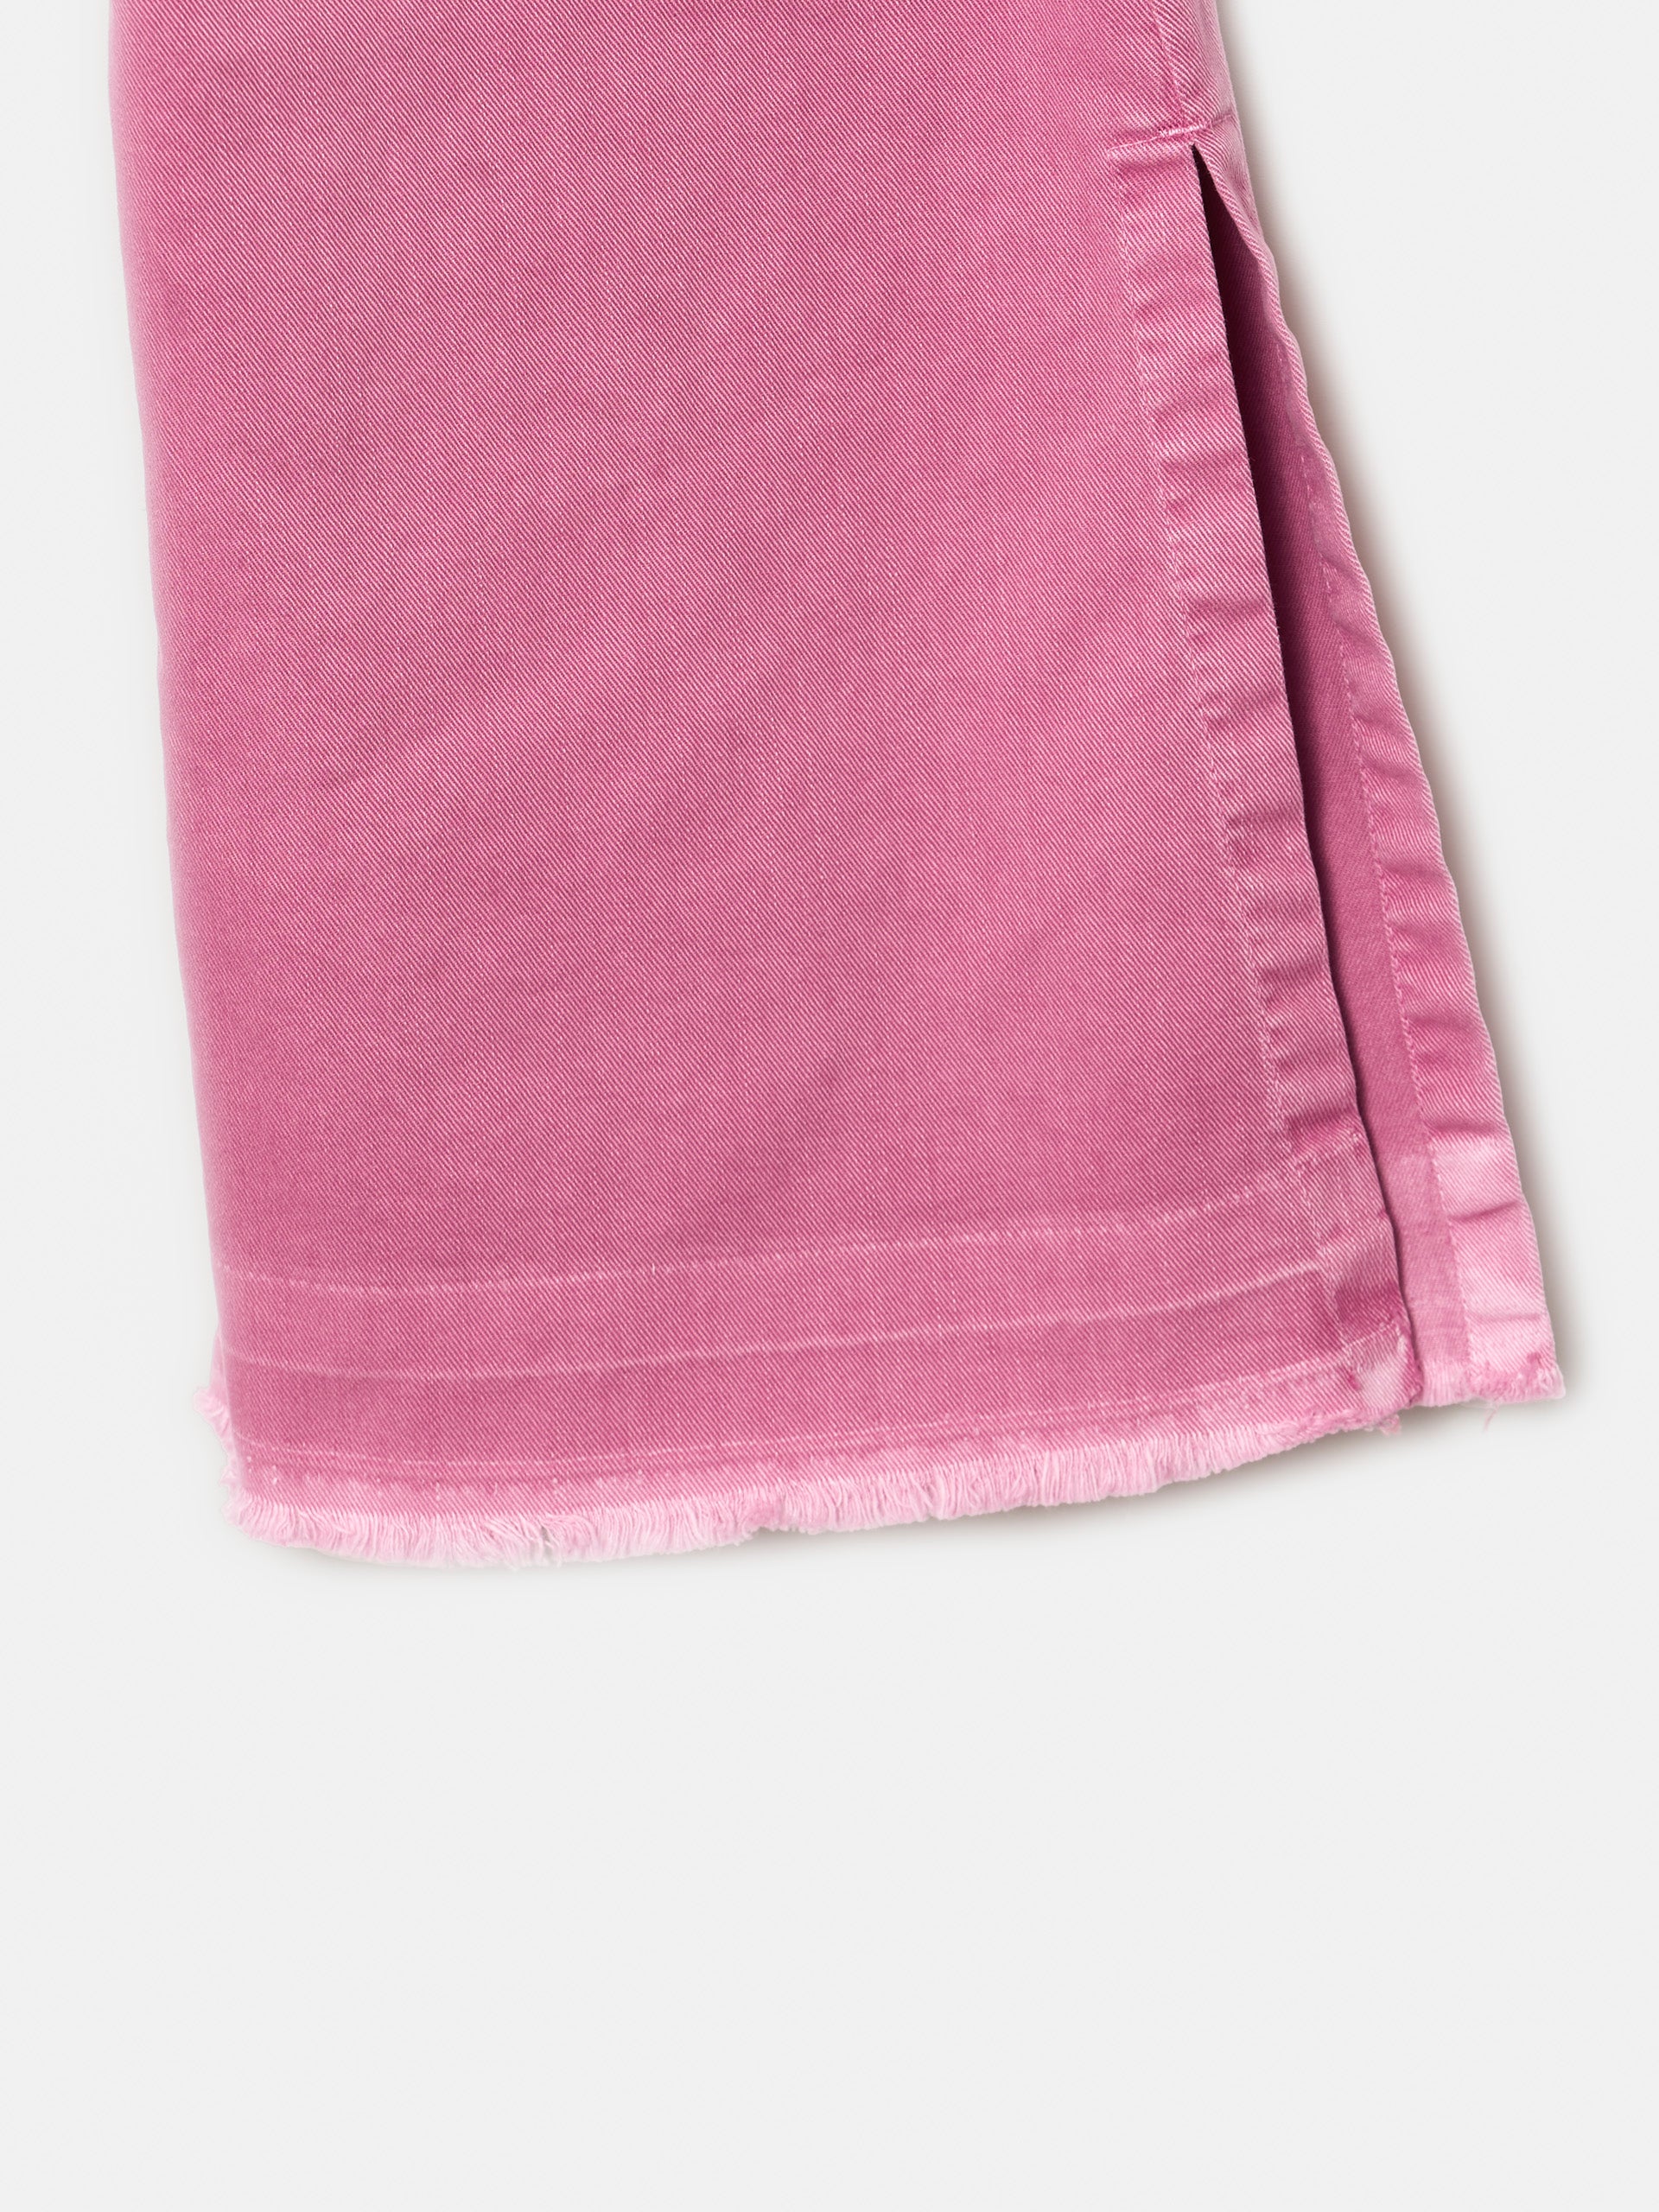 Pantalon jupe-culotte rose avec poches